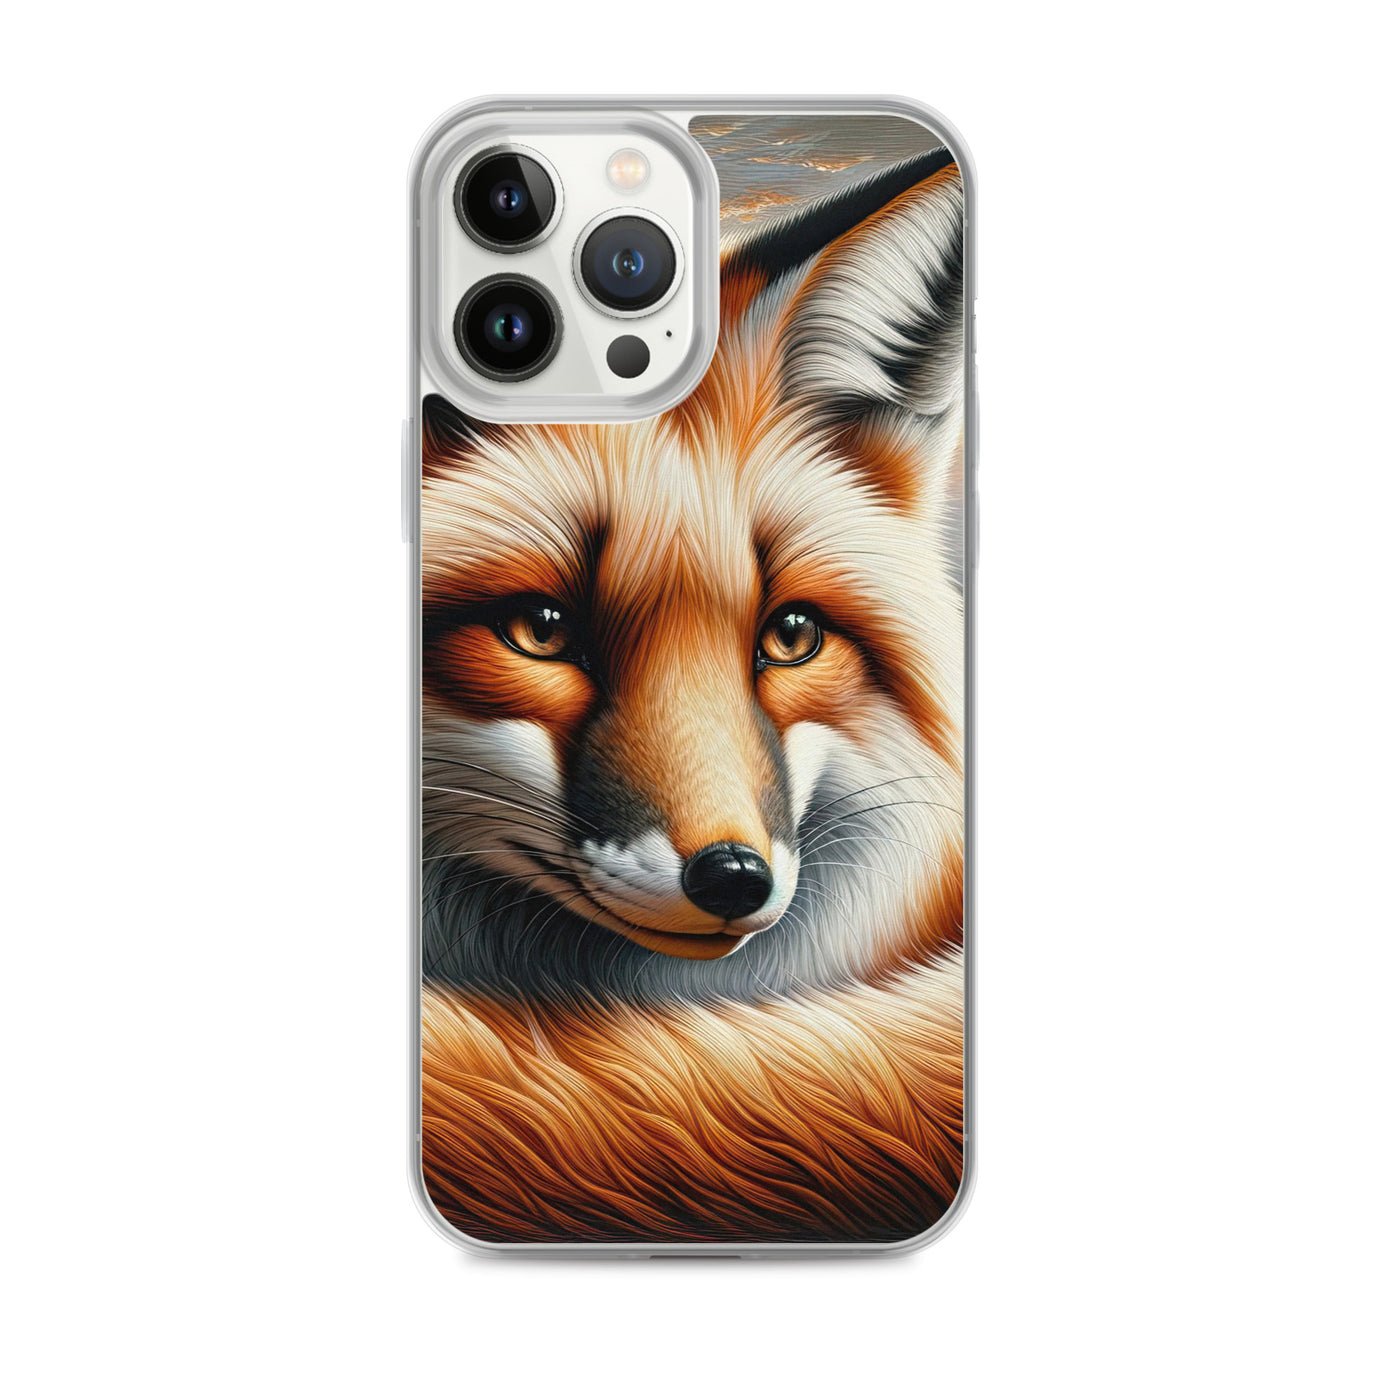 Ölgemälde eines nachdenklichen Fuchses mit weisem Blick - iPhone Schutzhülle (durchsichtig) camping xxx yyy zzz iPhone 13 Pro Max